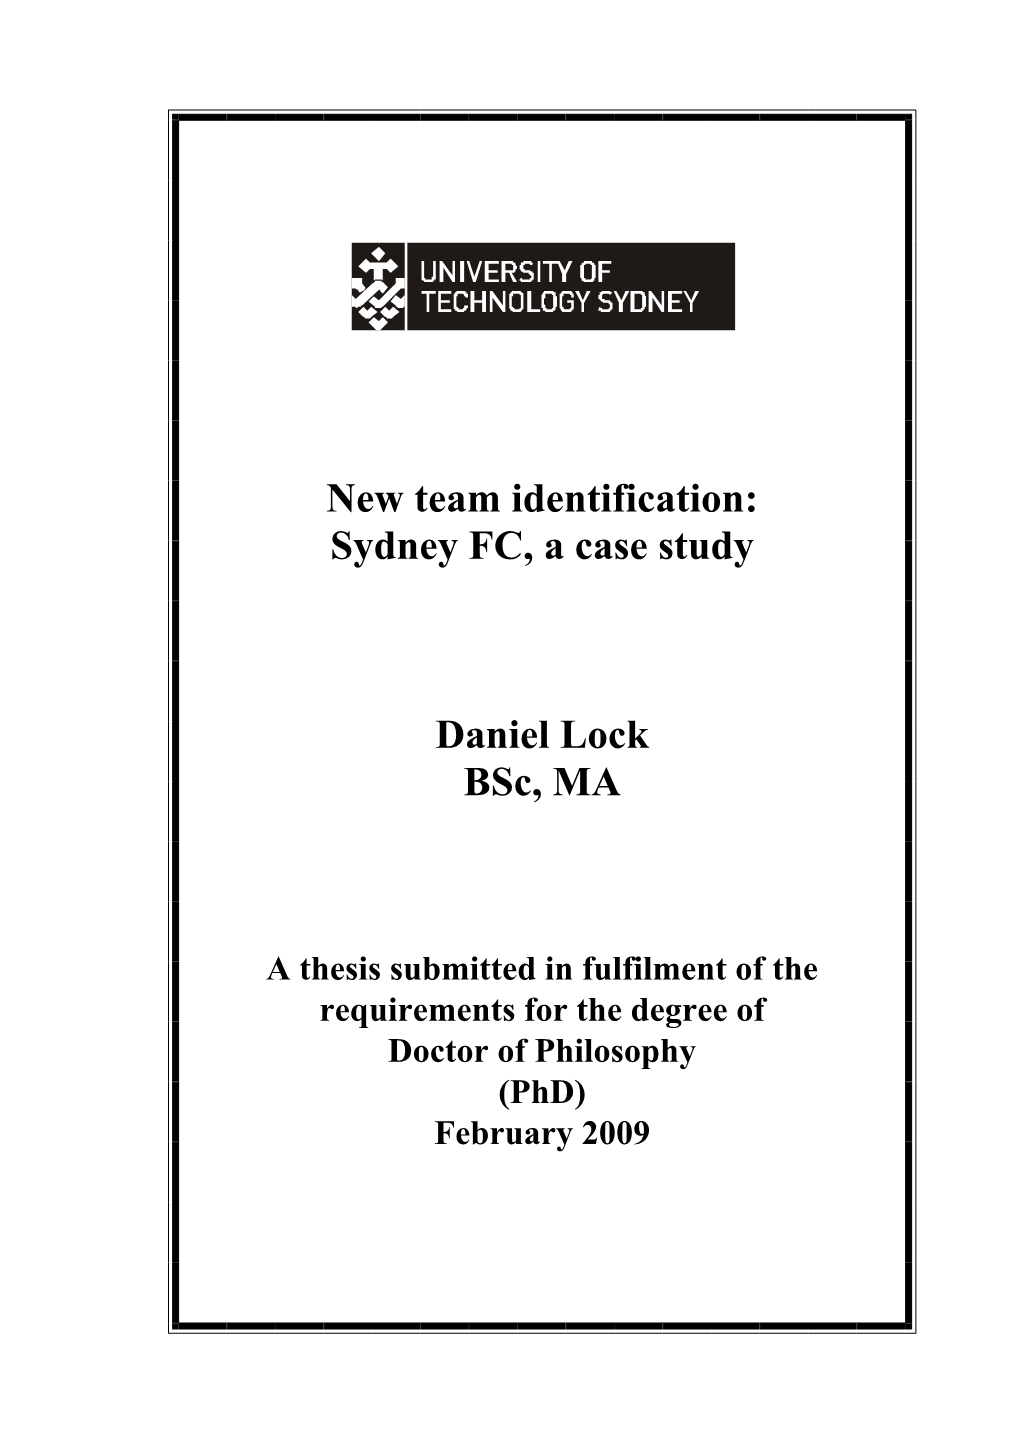 Sydney FC, a Case Study Daniel Lock Bsc, MA